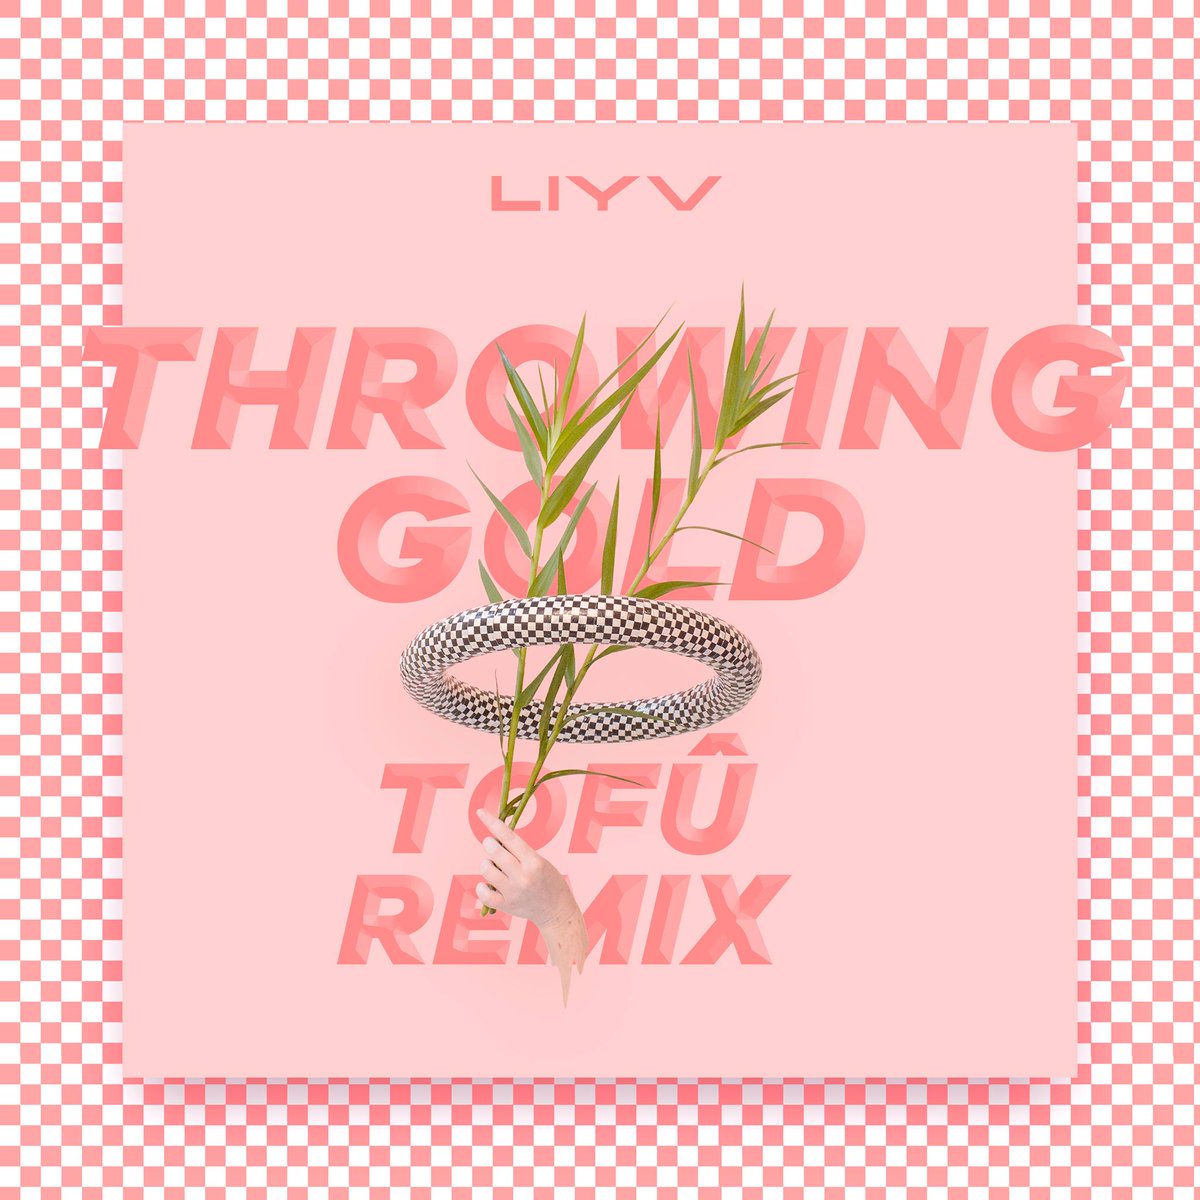 Throwing Gold (tofû remix)